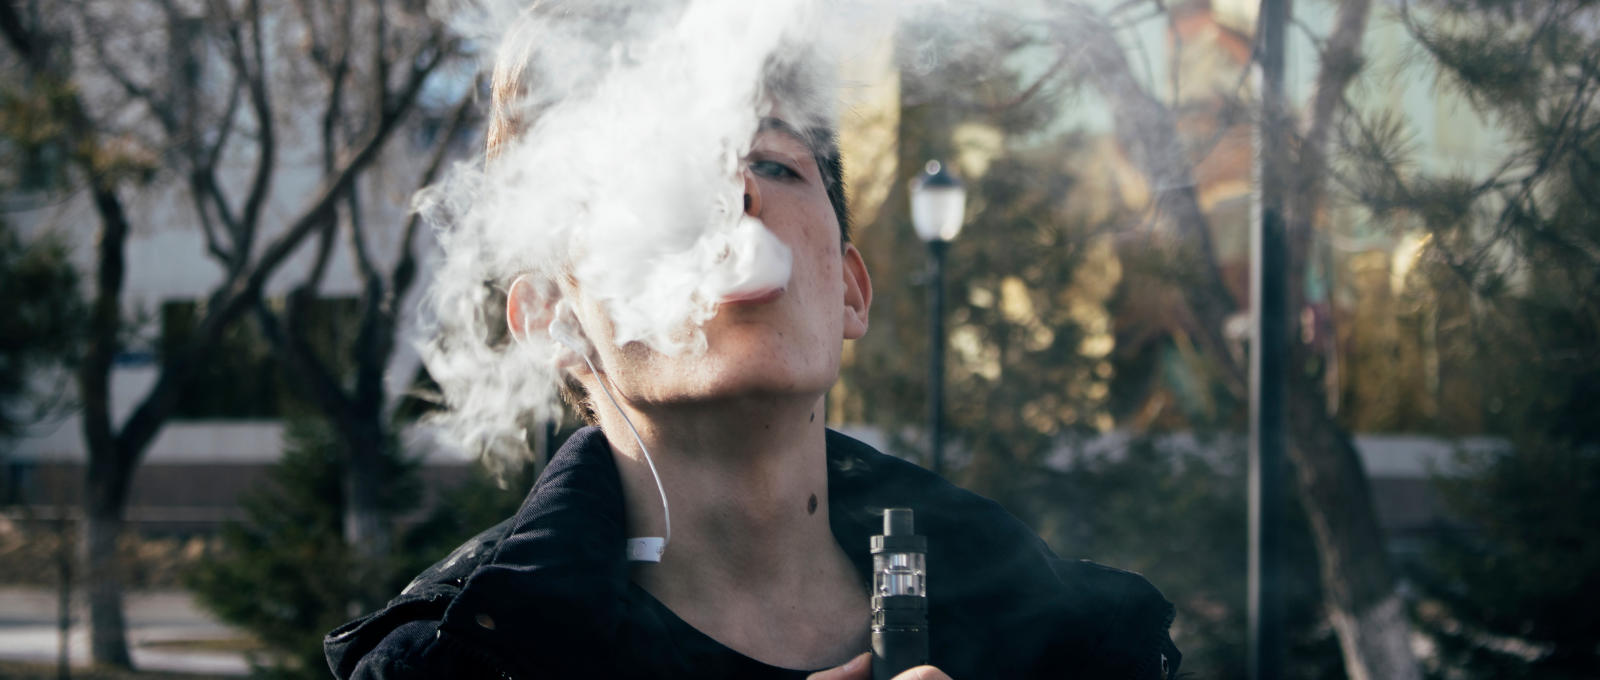 Teenager vaping and using nicotine